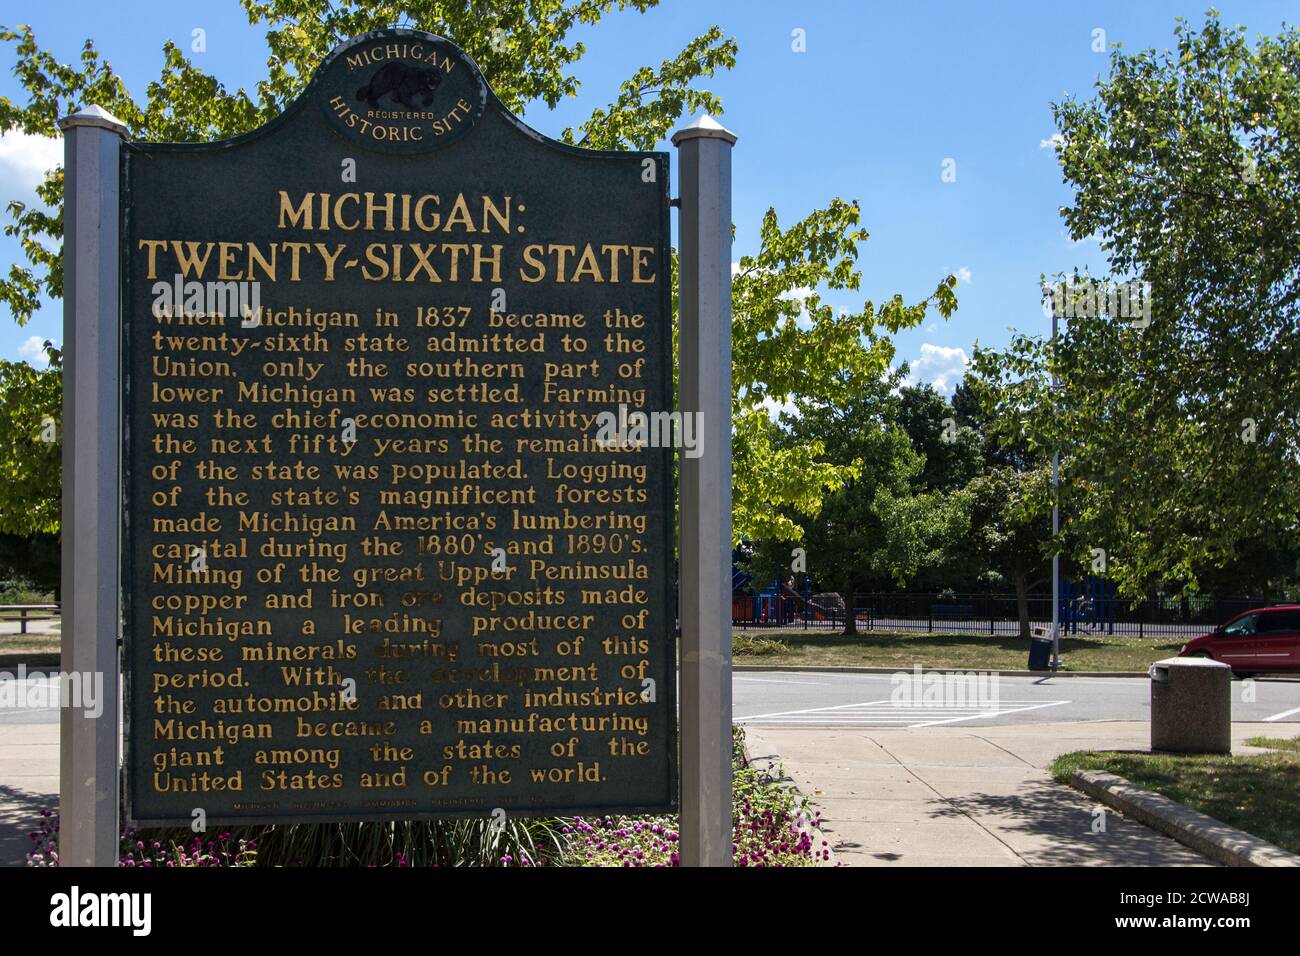 Marqueur historique honorant l'état du Michigan comme le vingt-sixième état dans les États-Unis d'Amérique. Banque D'Images